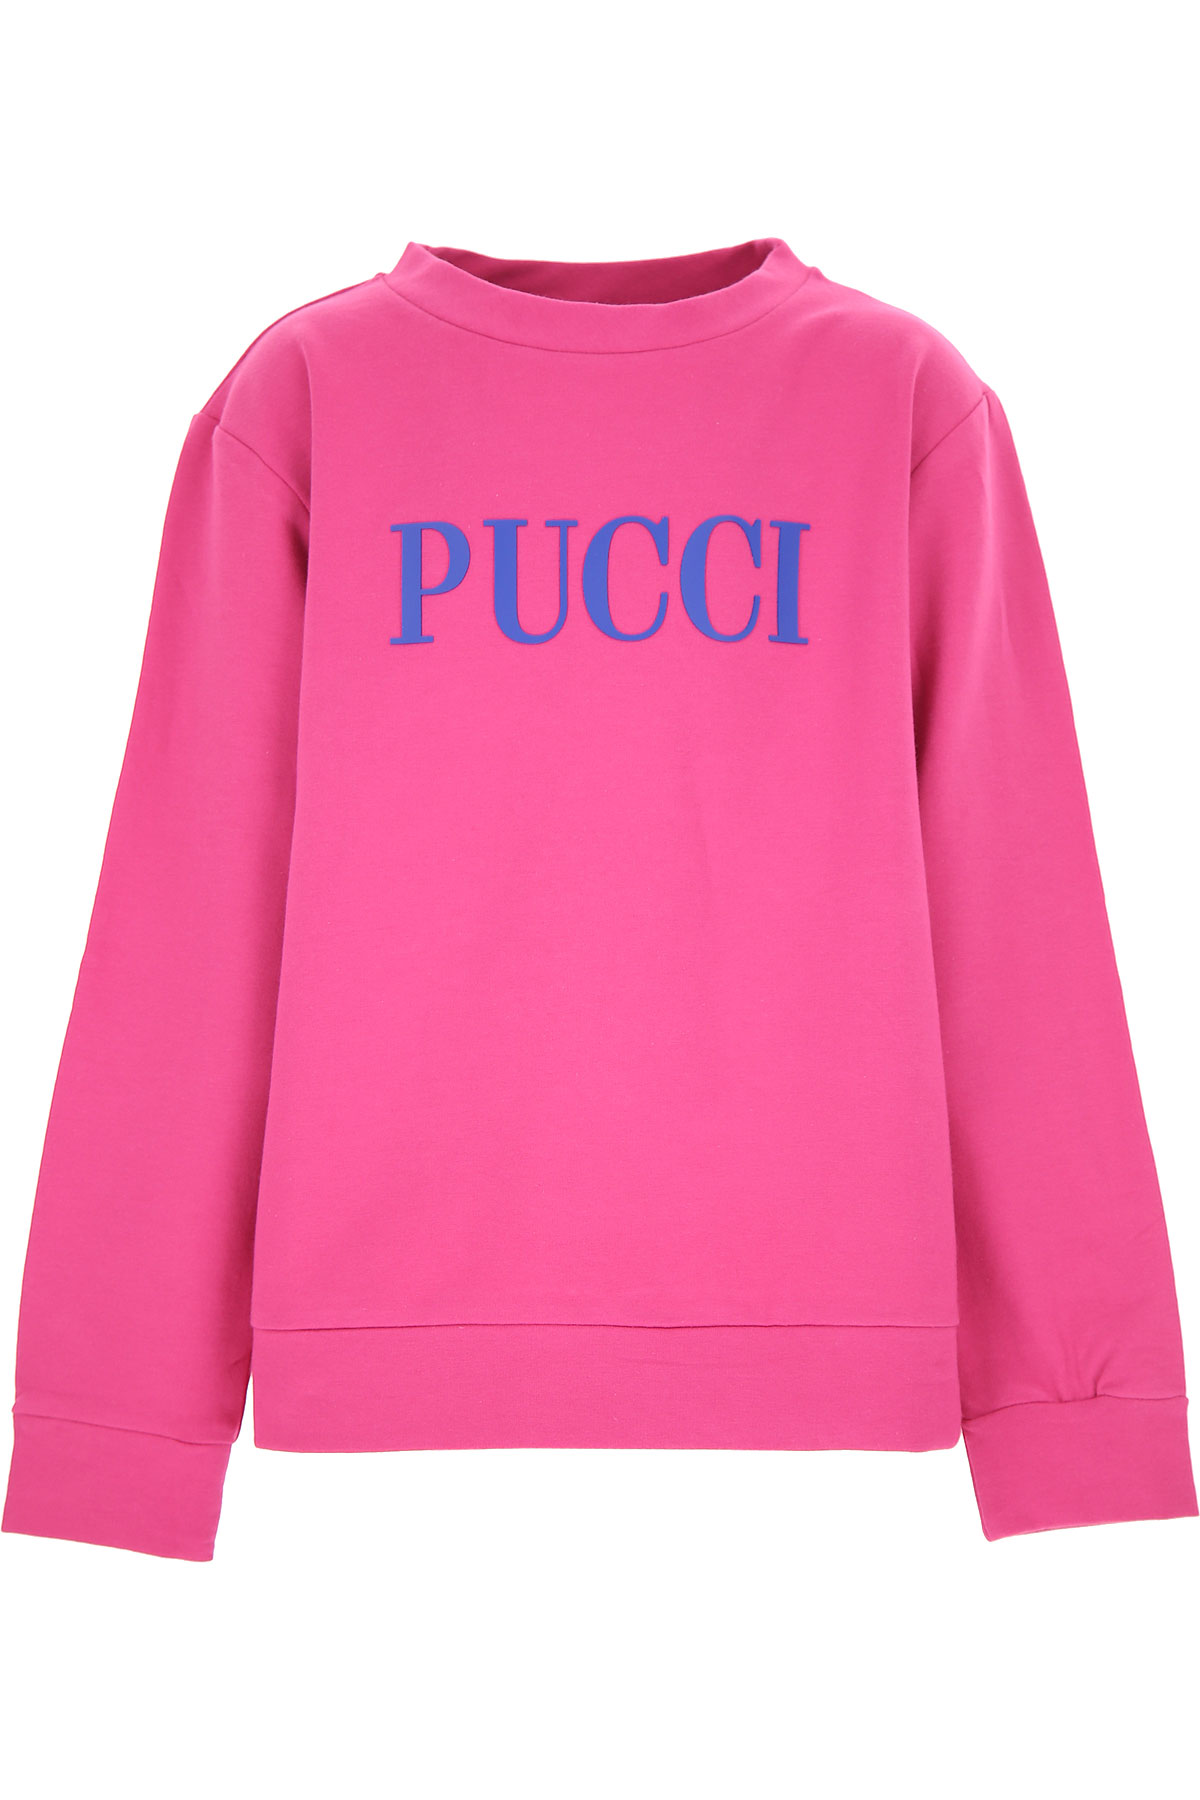 Emilio Pucci Kinder Sweatshirt & Kapuzenpullover für Mädchen Günstig im Sale, Fuchsie, Baumwolle, 2017, 10Y 12Y 14Y 8Y